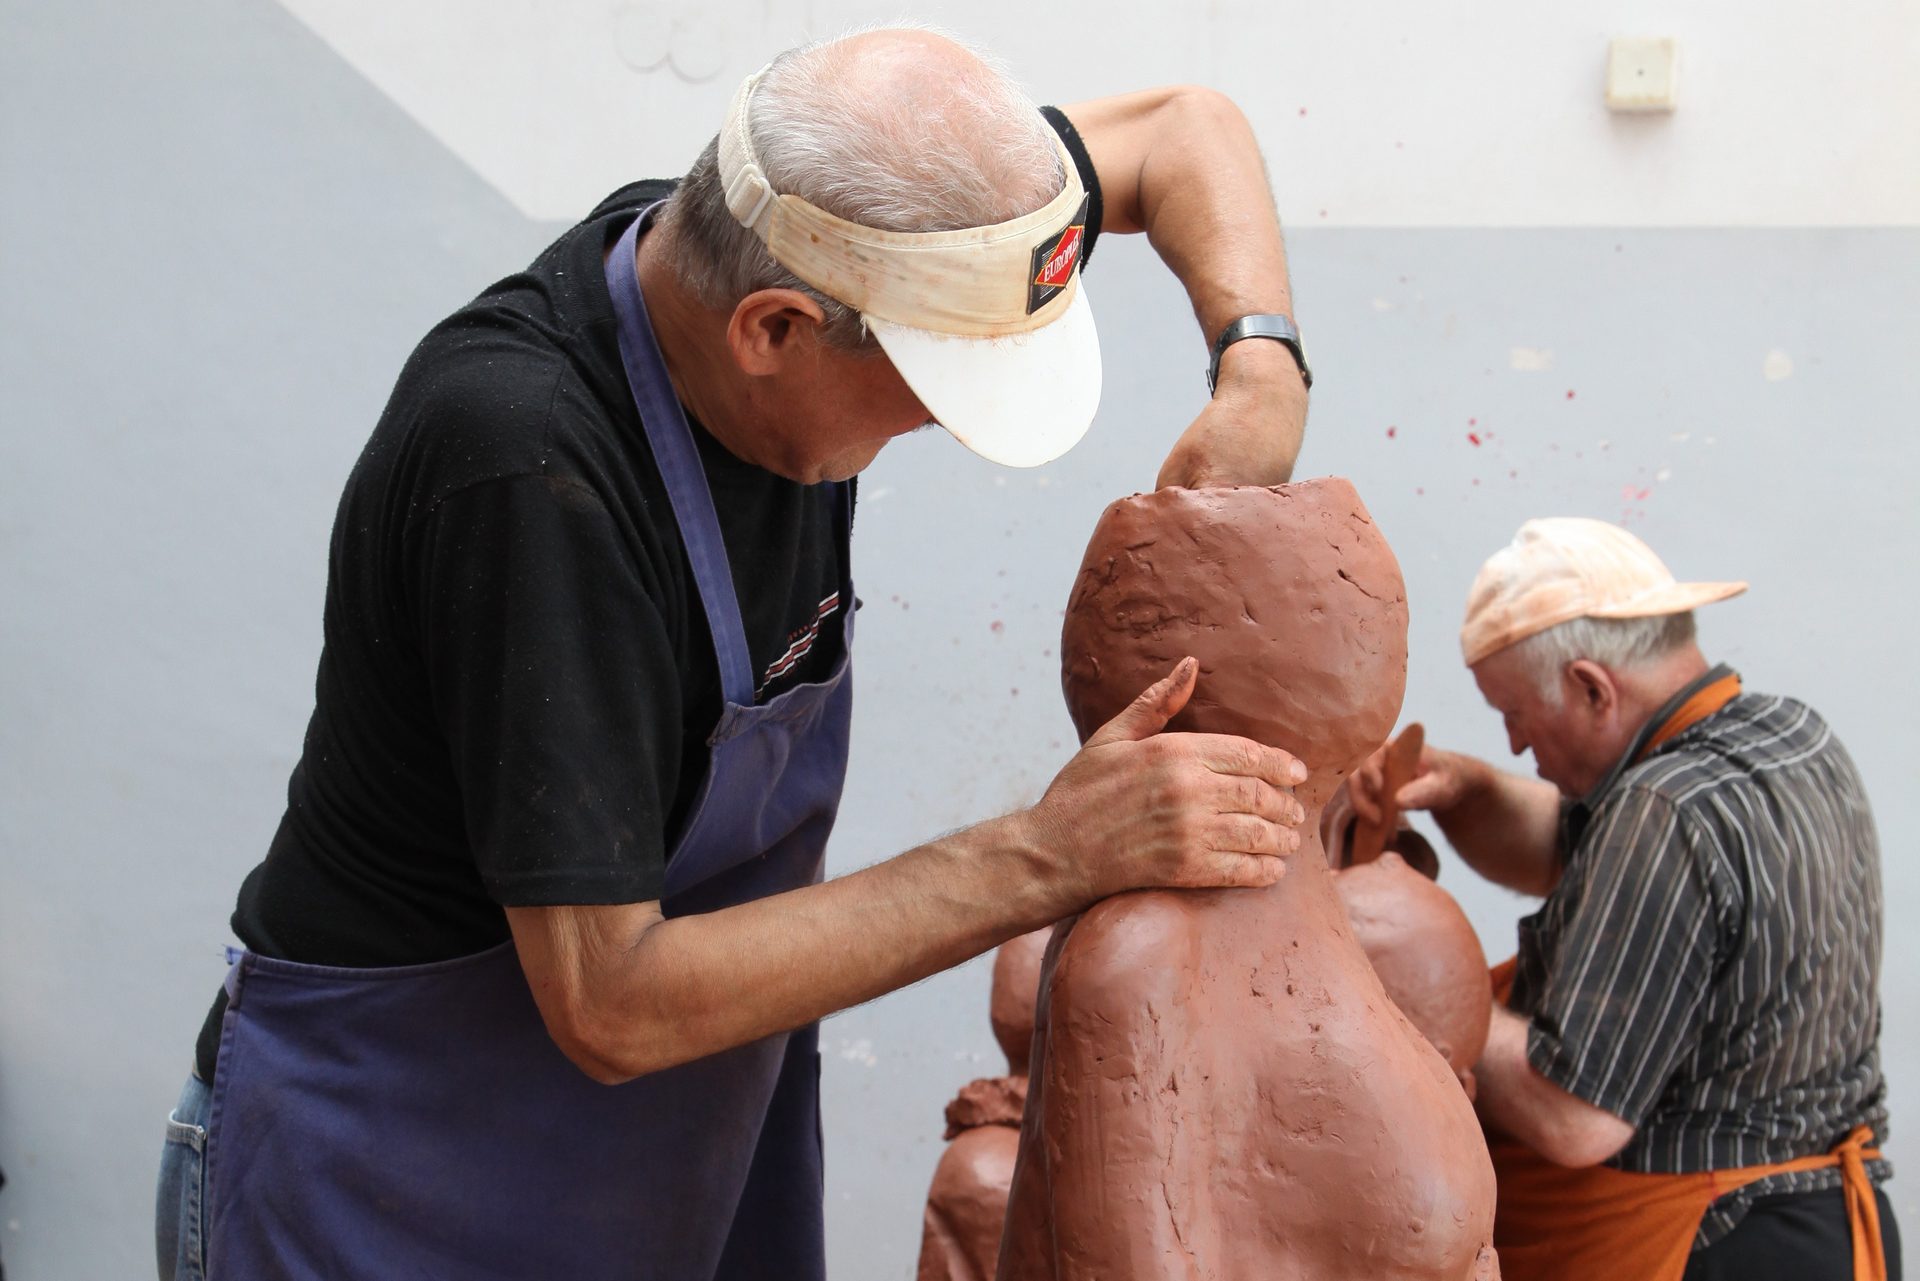 Zdjęcie przedstawia osoby znajdujące się w pracowni rzeźbiarskiej. Na pierwszym planie mężczyzna modeluje w glinie postać kobiety.